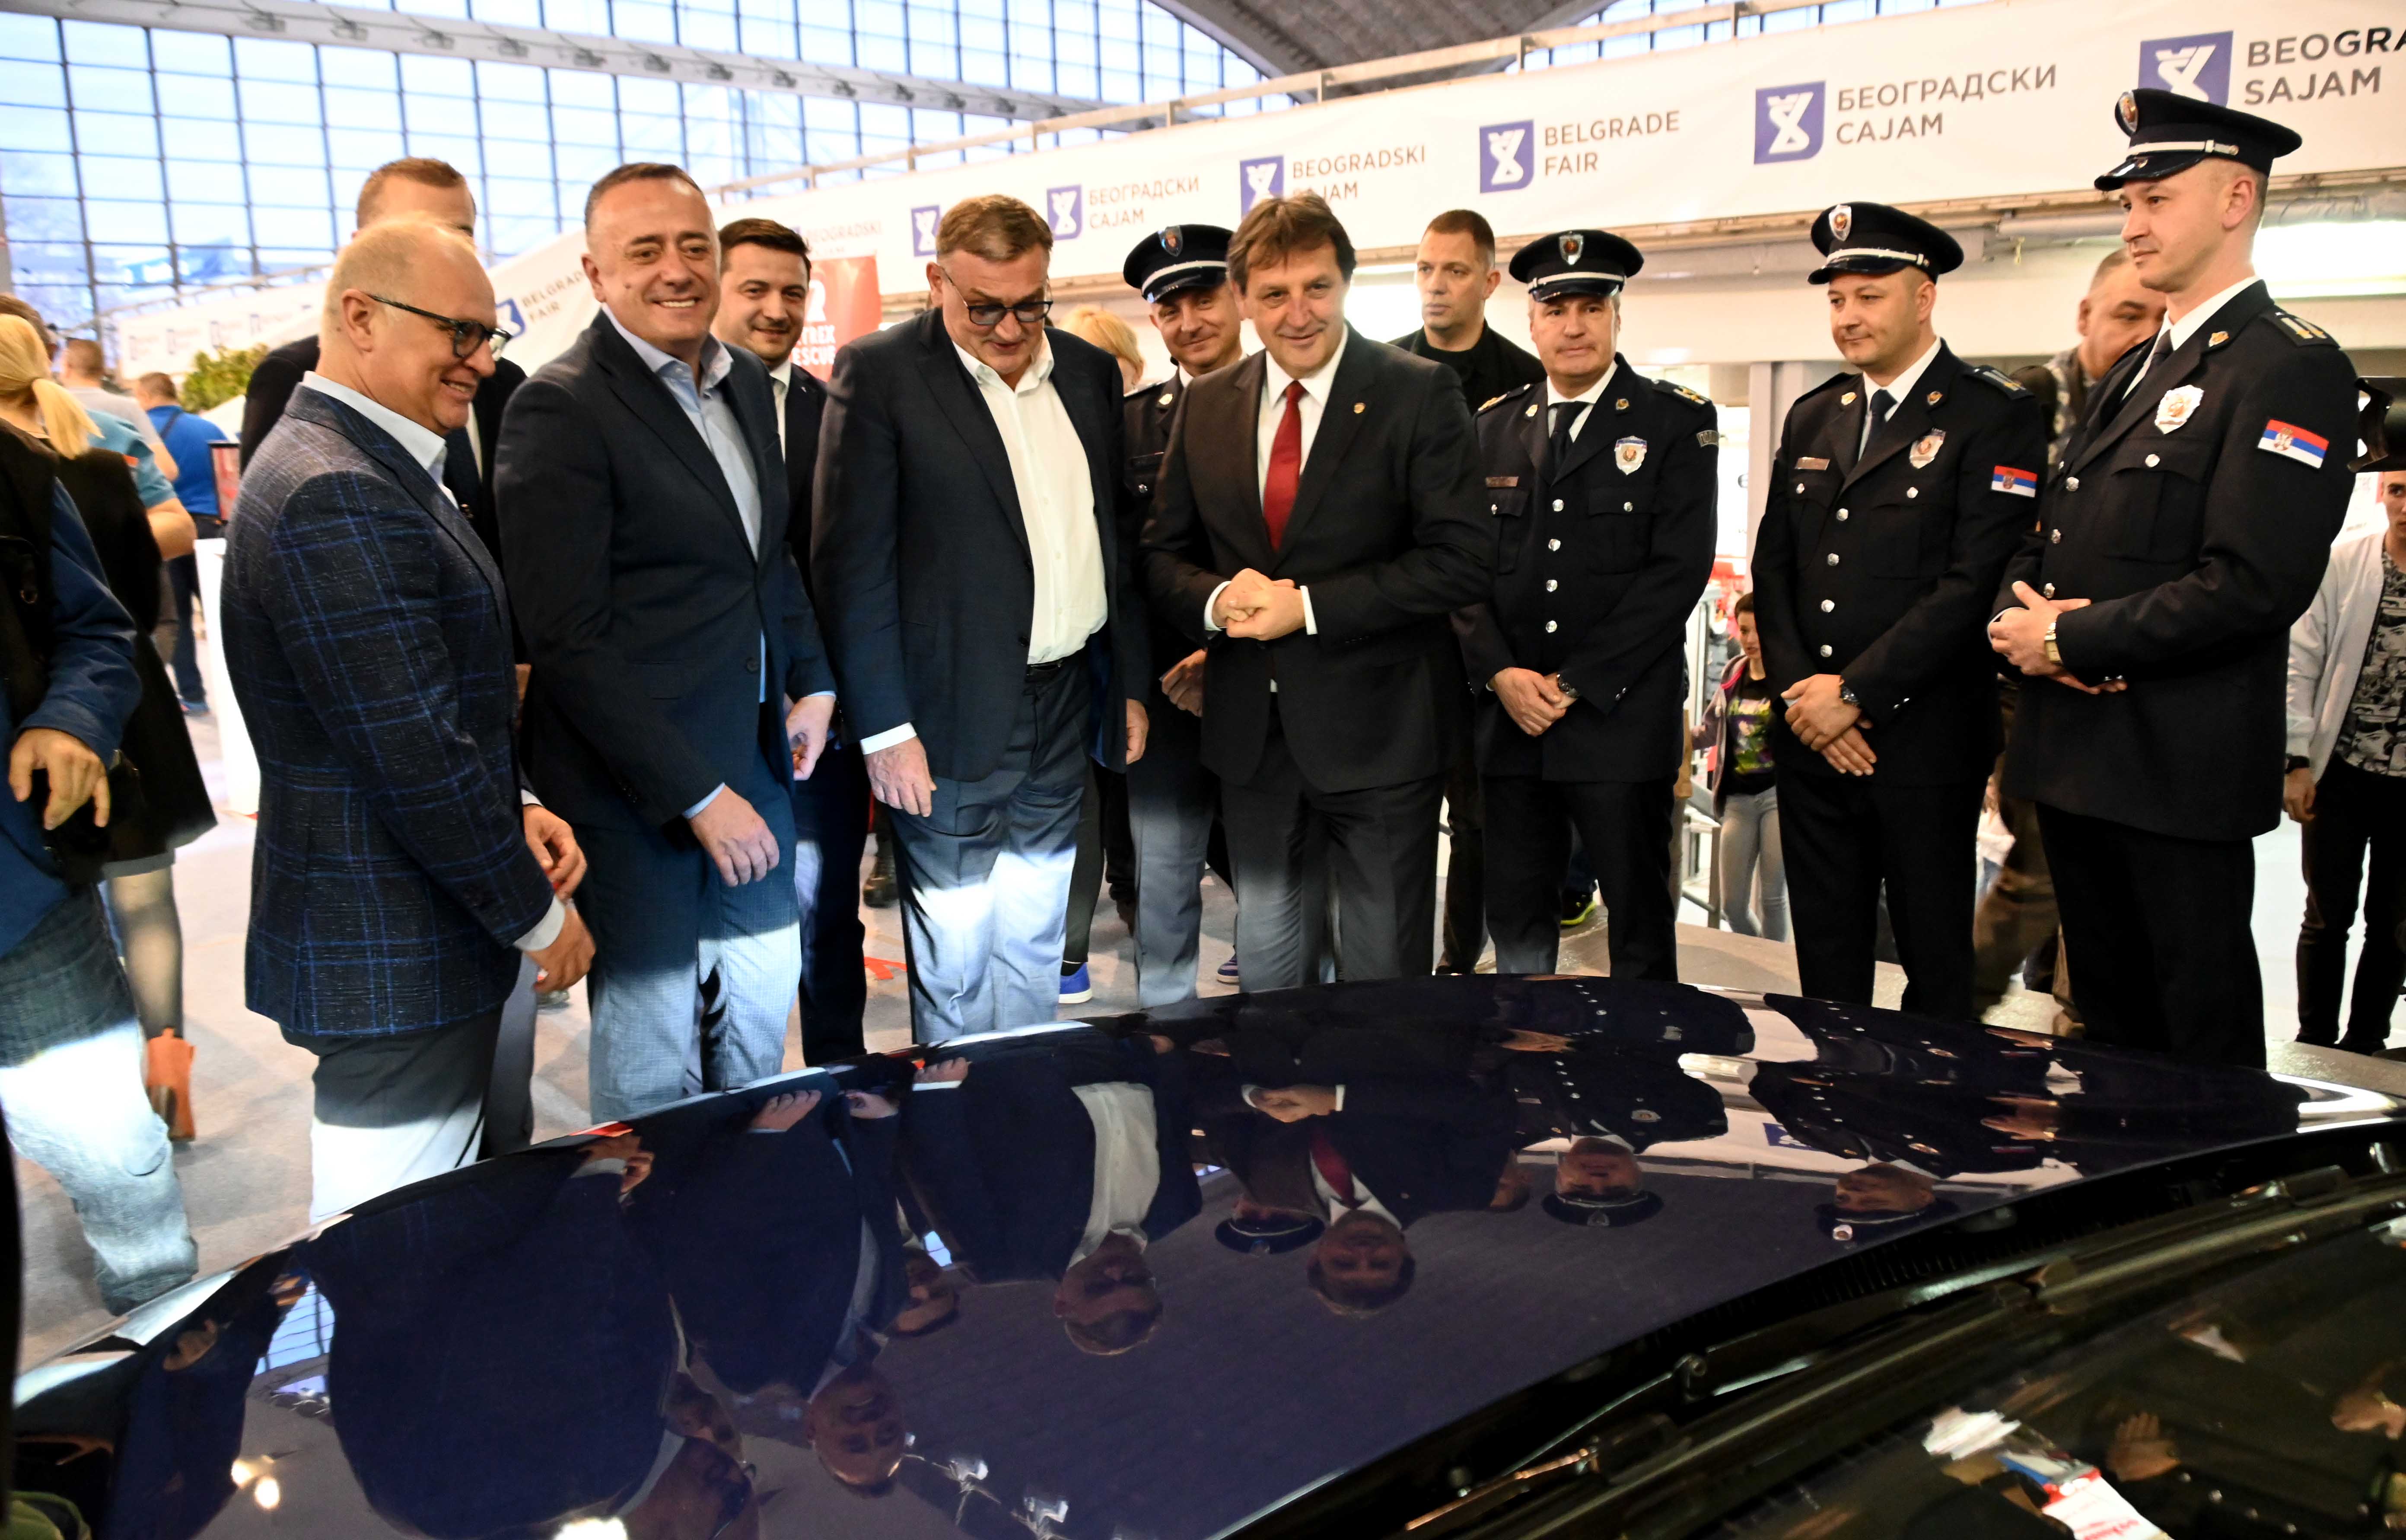 Посетиоцима Међународног сајма аутомобила у Београду представљена опрема коју користи саобраћајна полиција у свакодневном раду